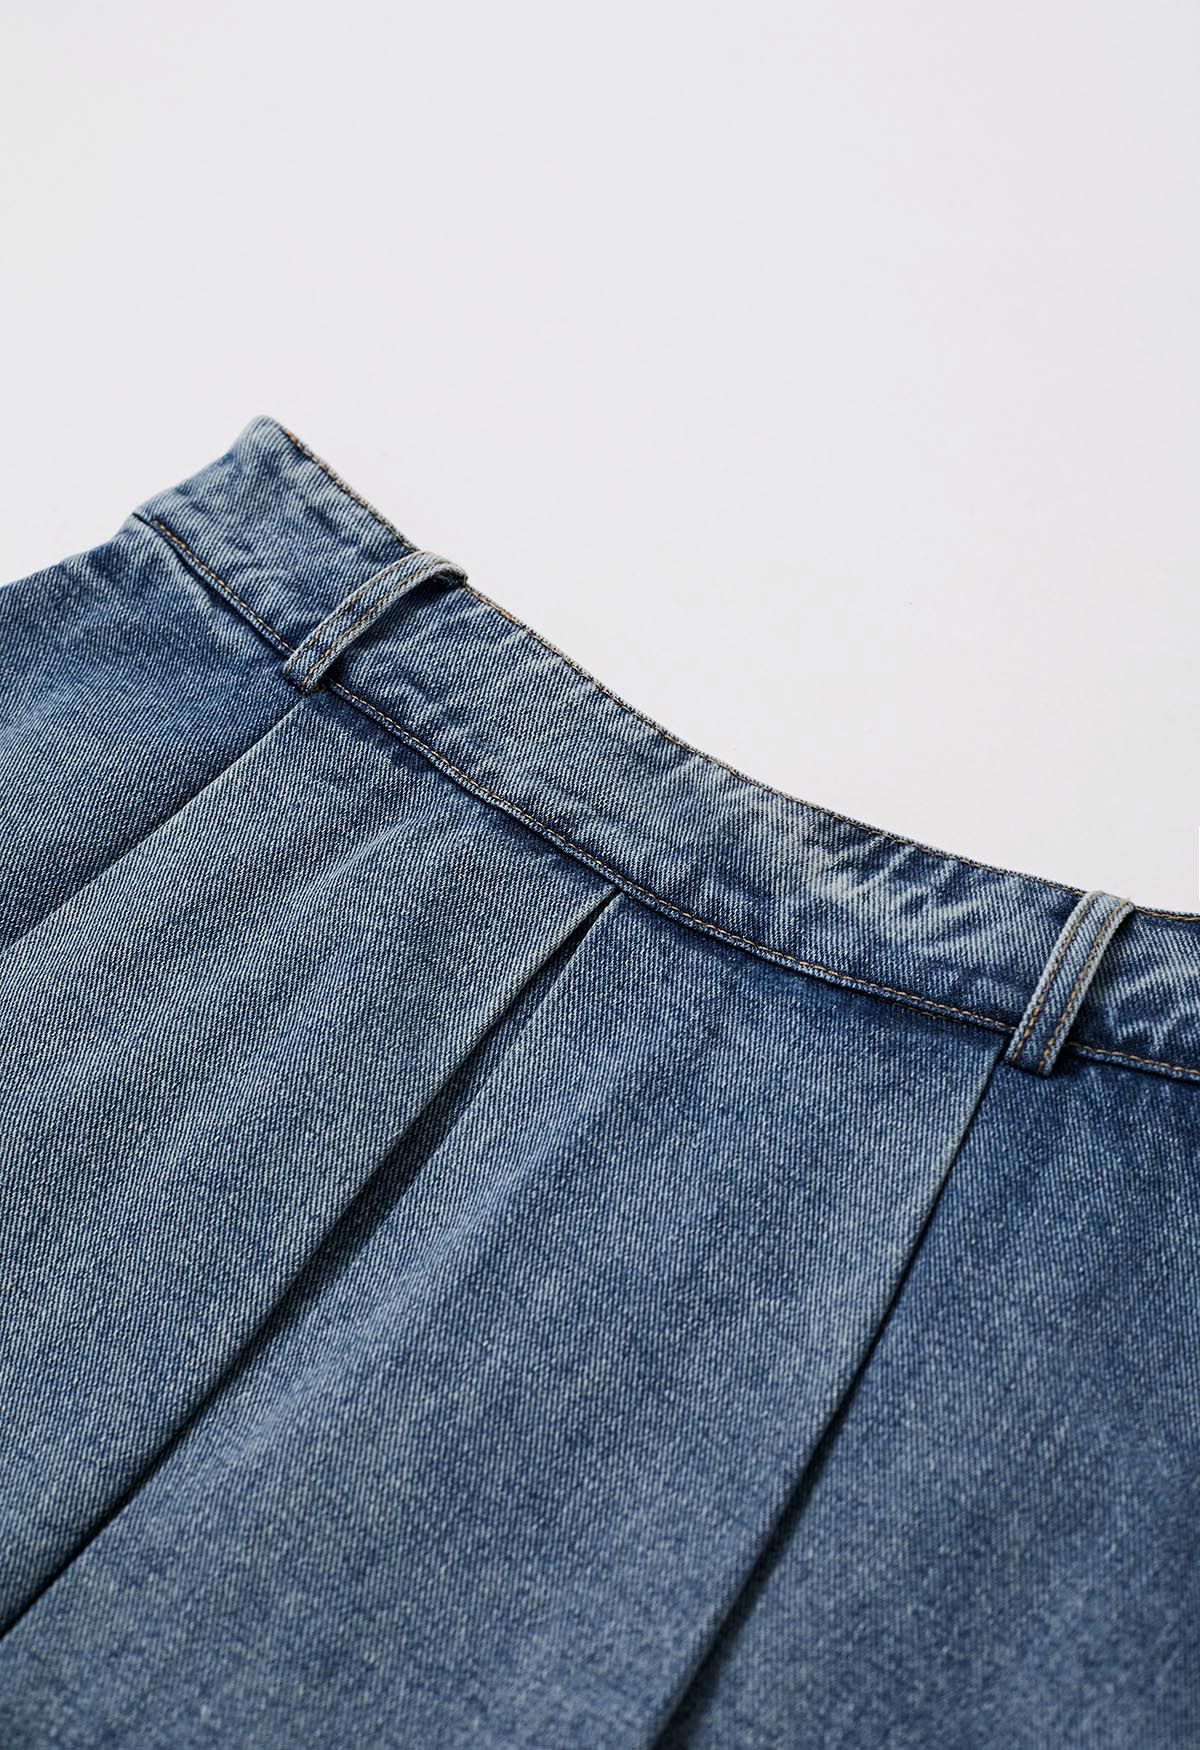 Minifalda pantalón vaquera con cinturón plisado en la parte delantera en azul